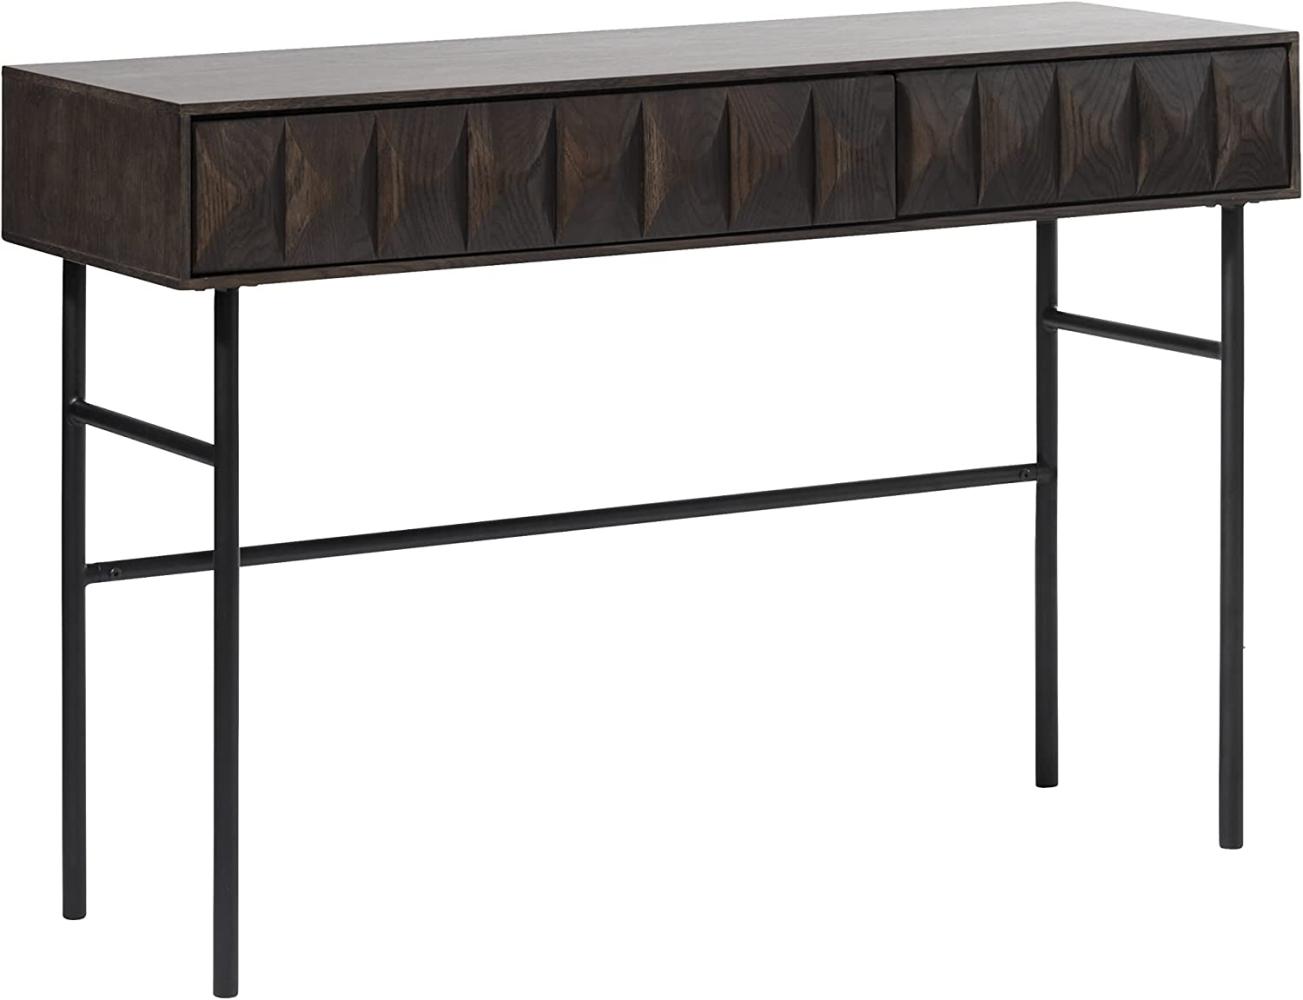 Latina Konsolentisch braun Beistelltisch Tisch Flurtisch Kommde Sideboard Möbel Bild 1